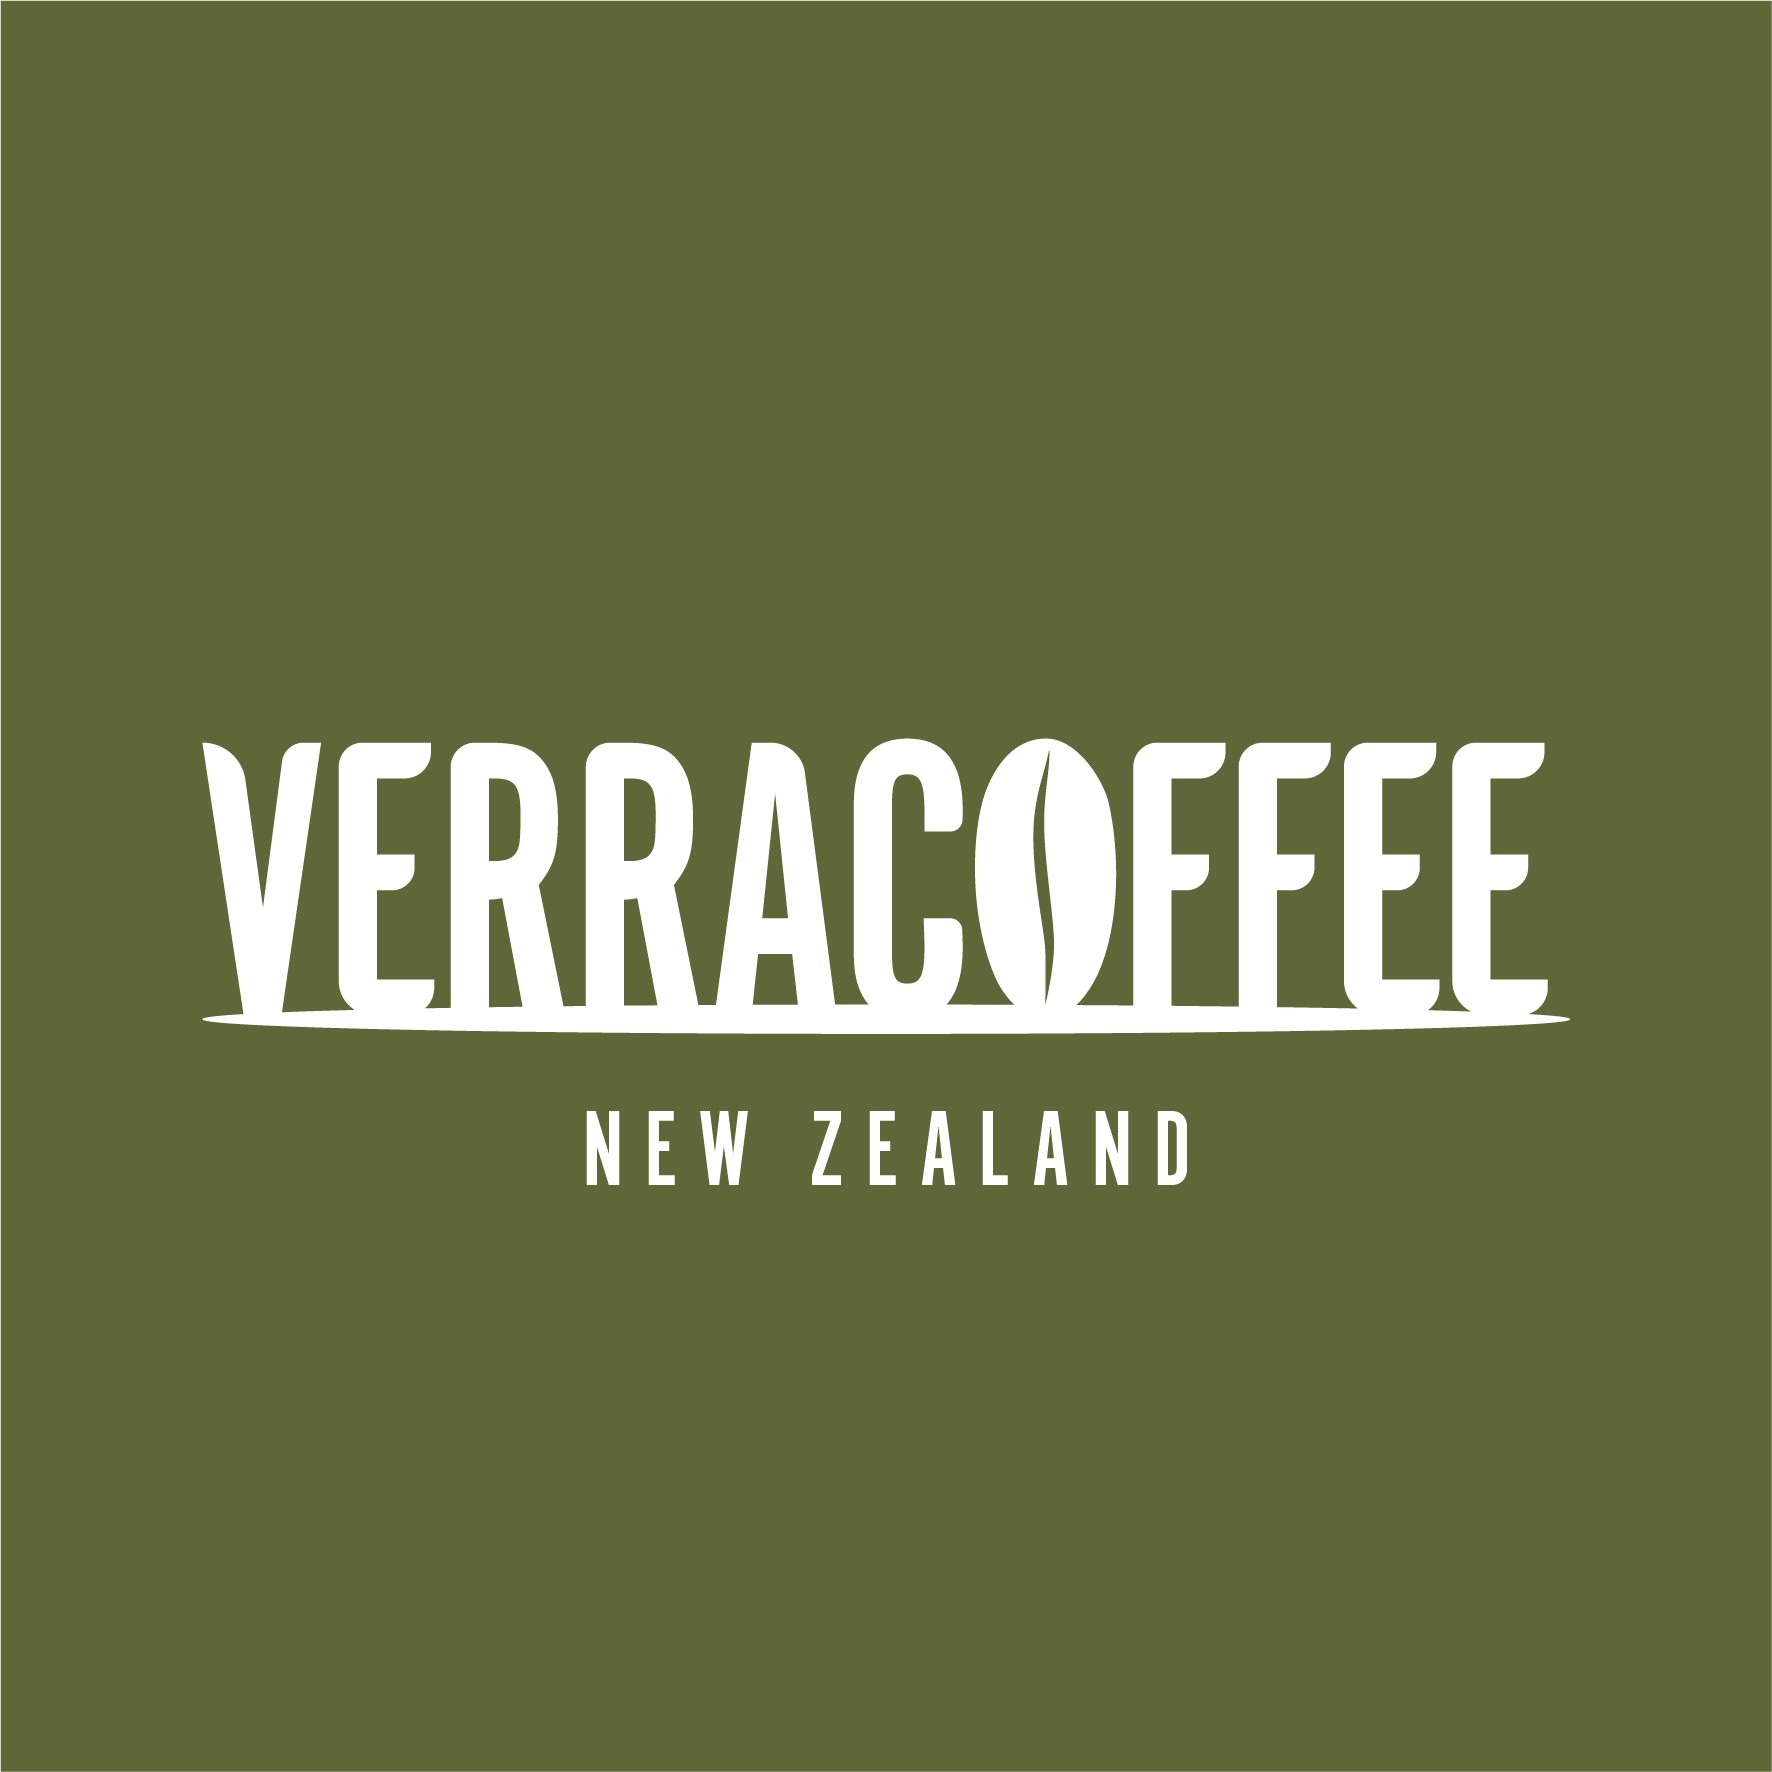 c2db53b1-d891-4d74-a41c-7e27c5edc40a-business_logo-Verracoffee-Logo_white_ongreen_square_NZ.jpg